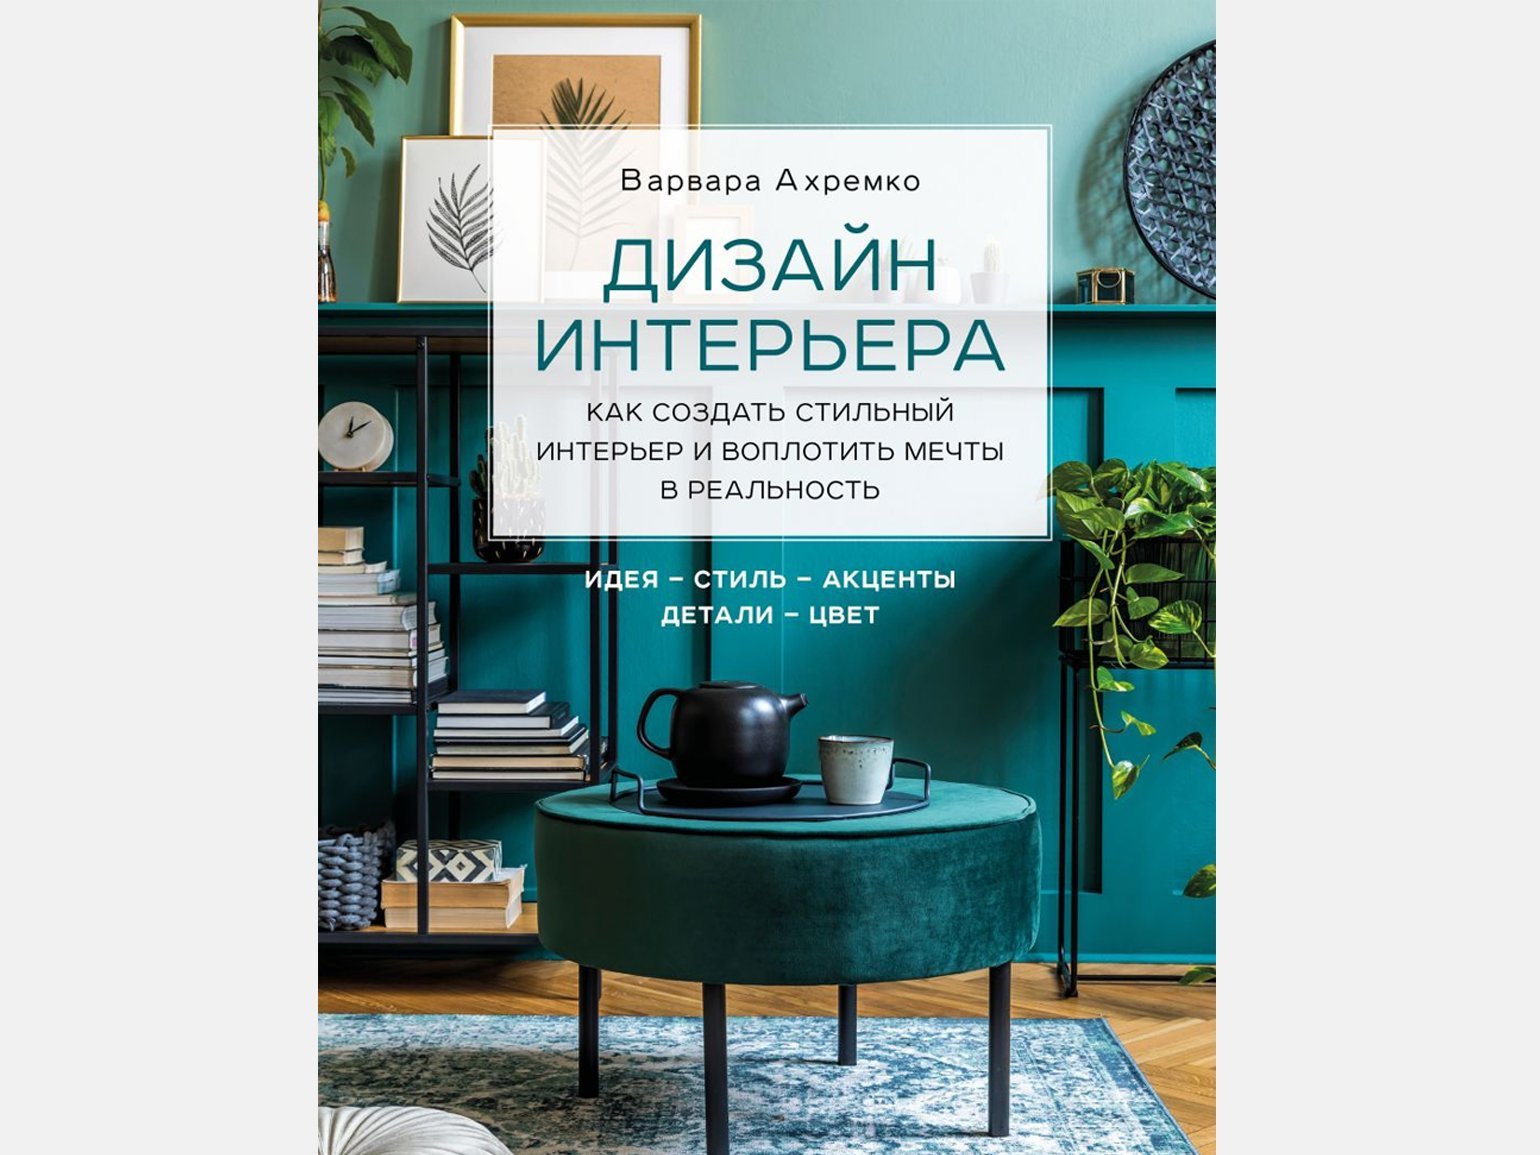 Элитный дизайн интерьера в СПб, студия Maxdesign